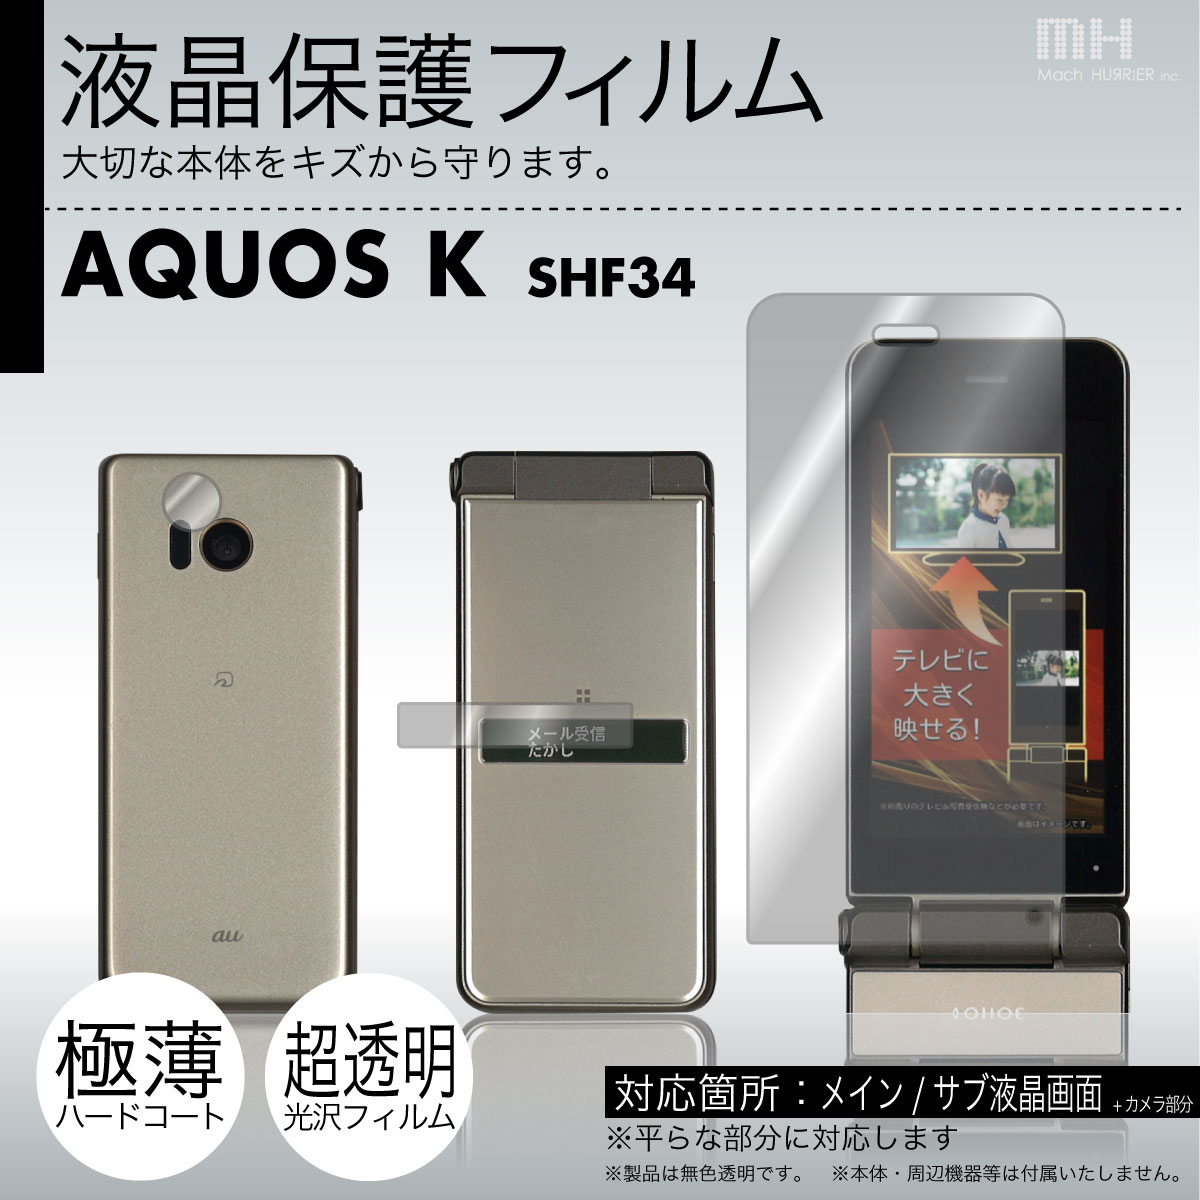 au AQUOS K SHF34 専用液晶保護フィルム 3台分セット※各種専用形状にカット済み 81 8a e